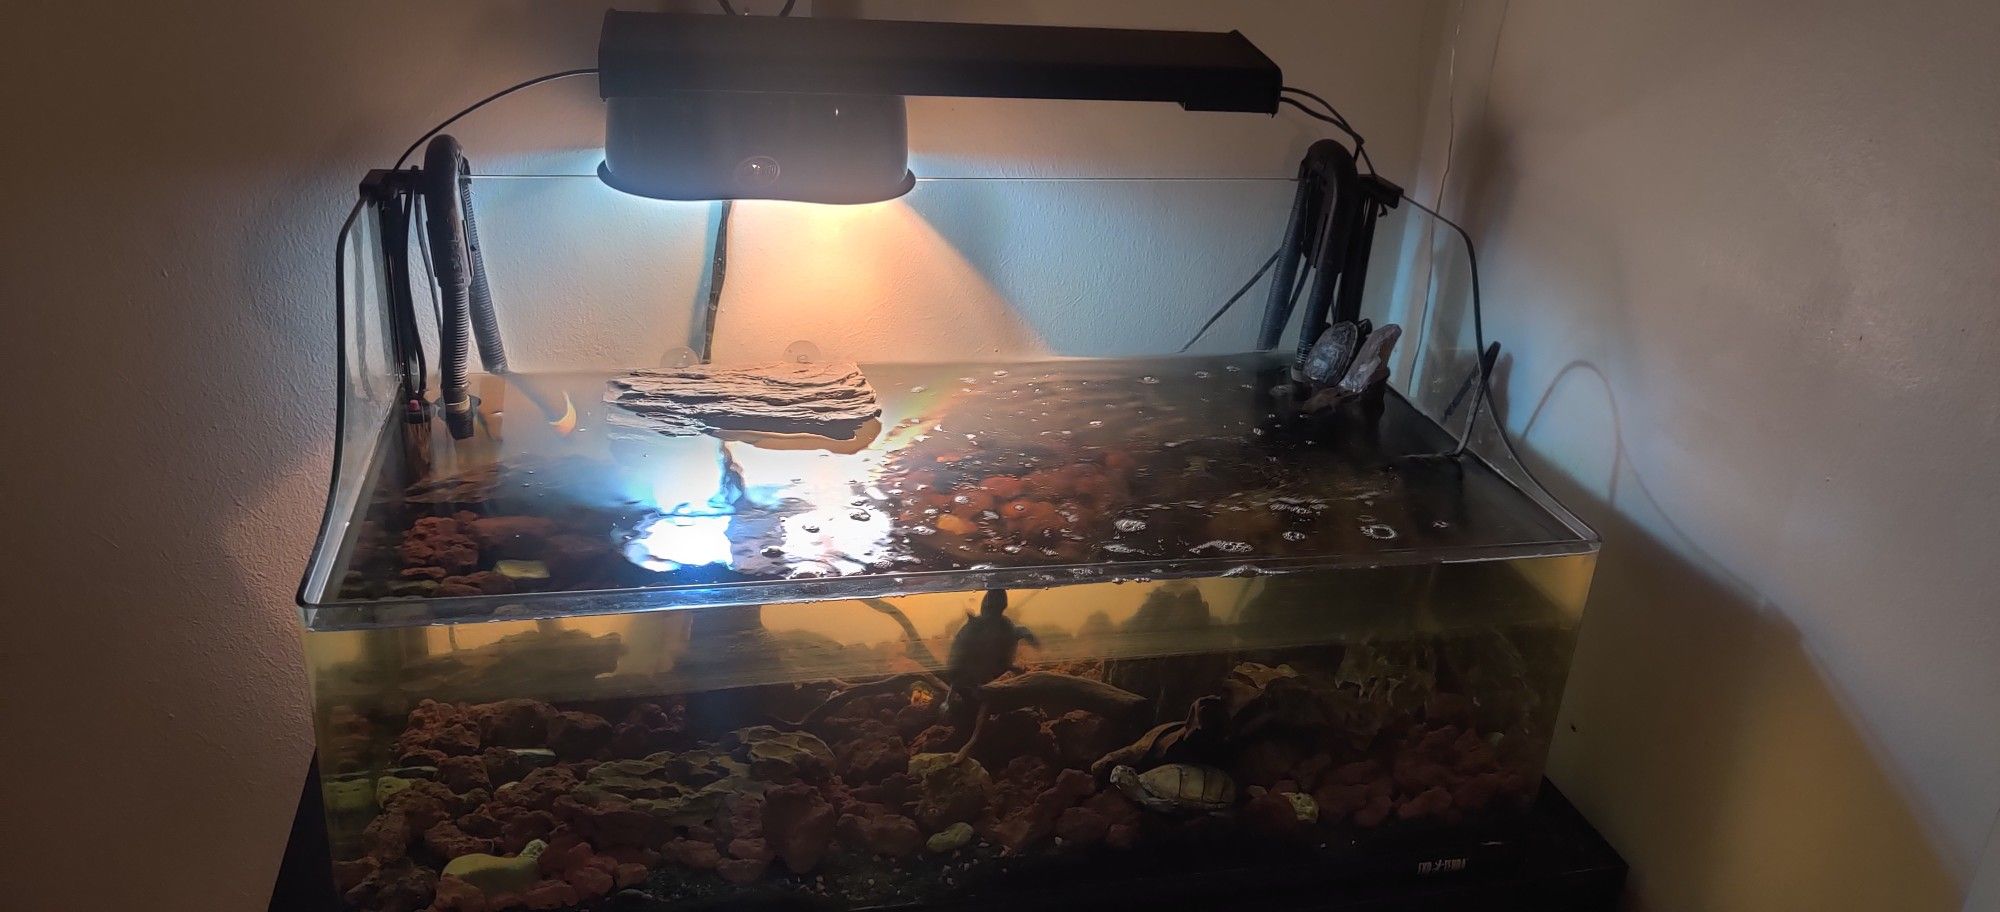 Turtle aquarium 20 gallon's tank